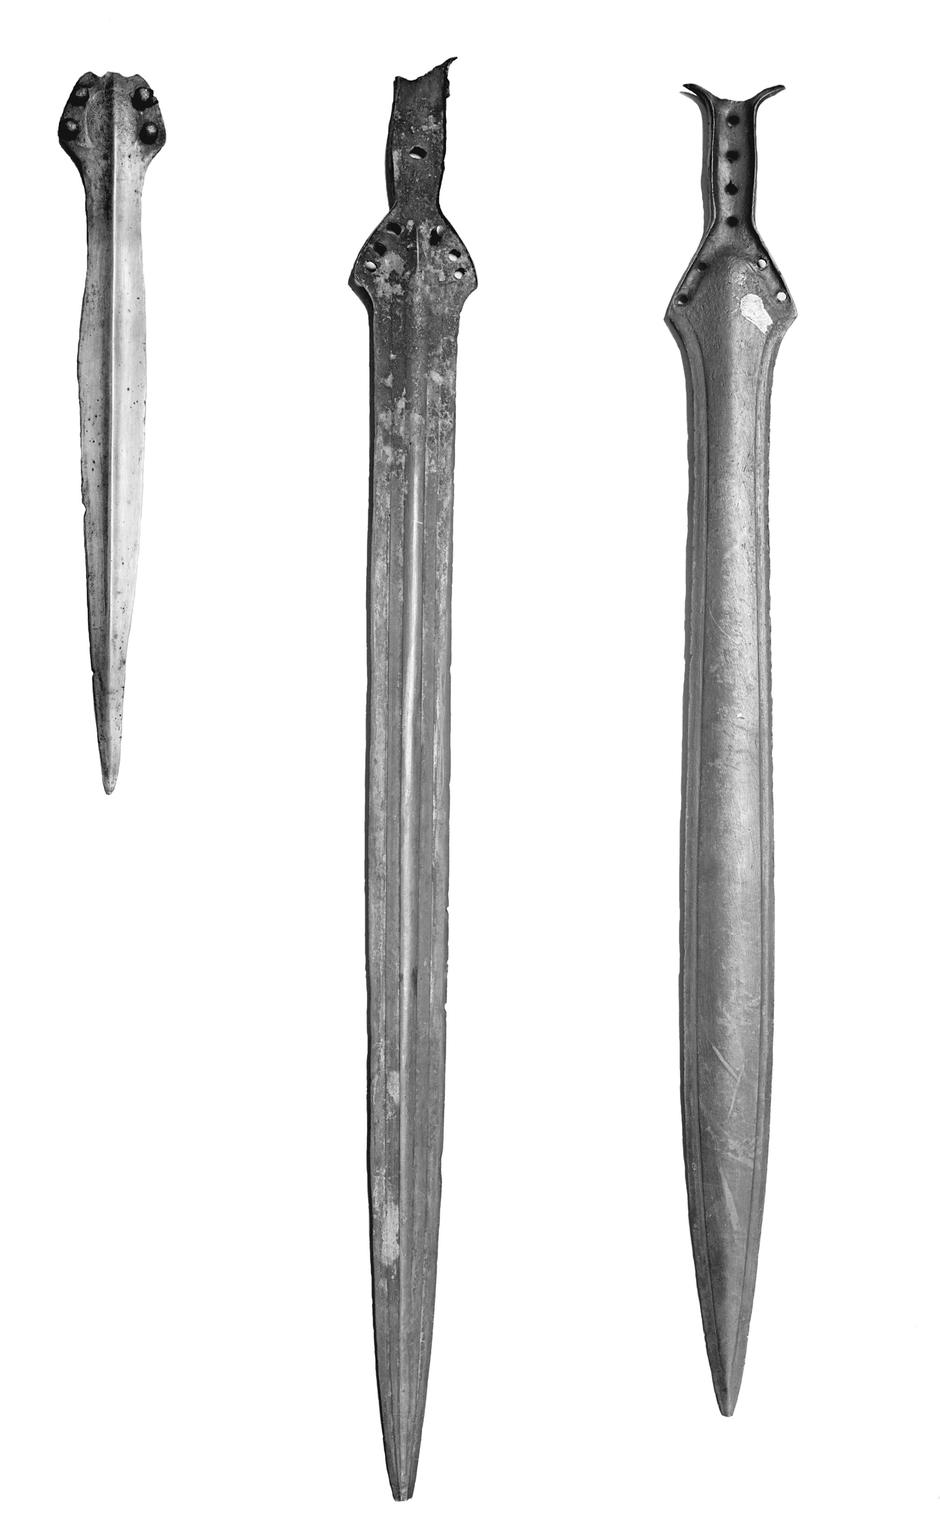 Trije bronasti meči (z Lavrice, iz Avberja in Vnanjih Goric), ukradeni leta 1985. | Avtor: Fotograf neznan, verjetno iz leta 1905, Arhiv Narodnega muzeja Slovenije